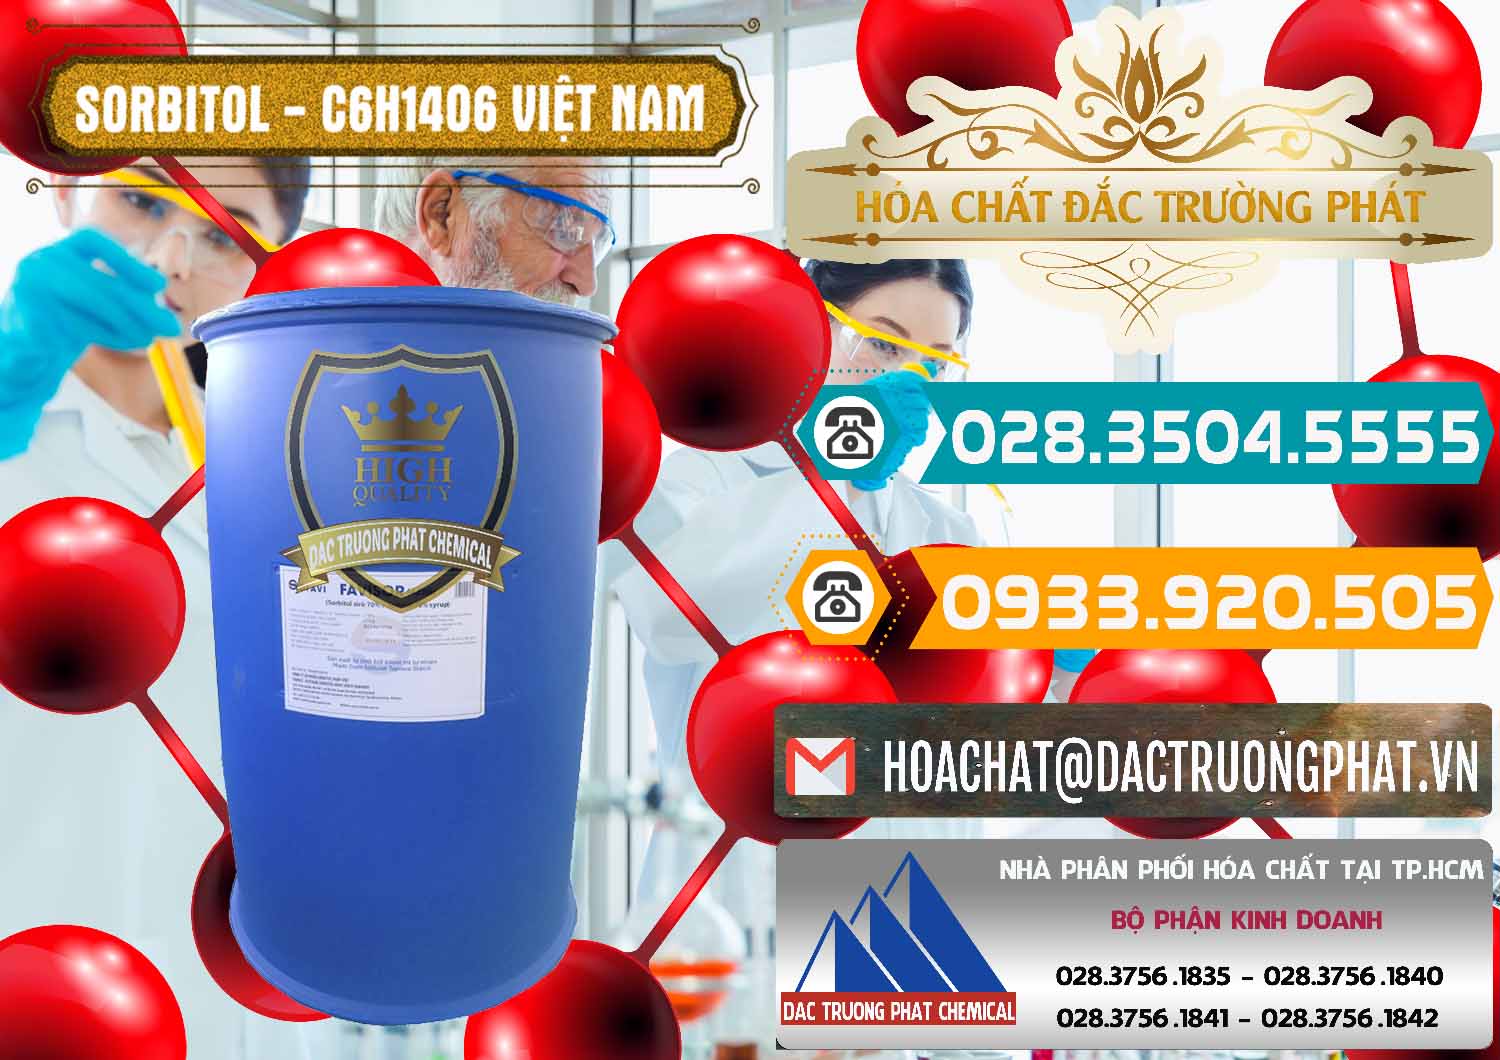 Công ty chuyên cung ứng - phân phối Sorbitol - C6H14O6 Lỏng 70% Food Grade Việt Nam - 0438 - Chuyên cung ứng và phân phối hóa chất tại TP.HCM - congtyhoachat.vn